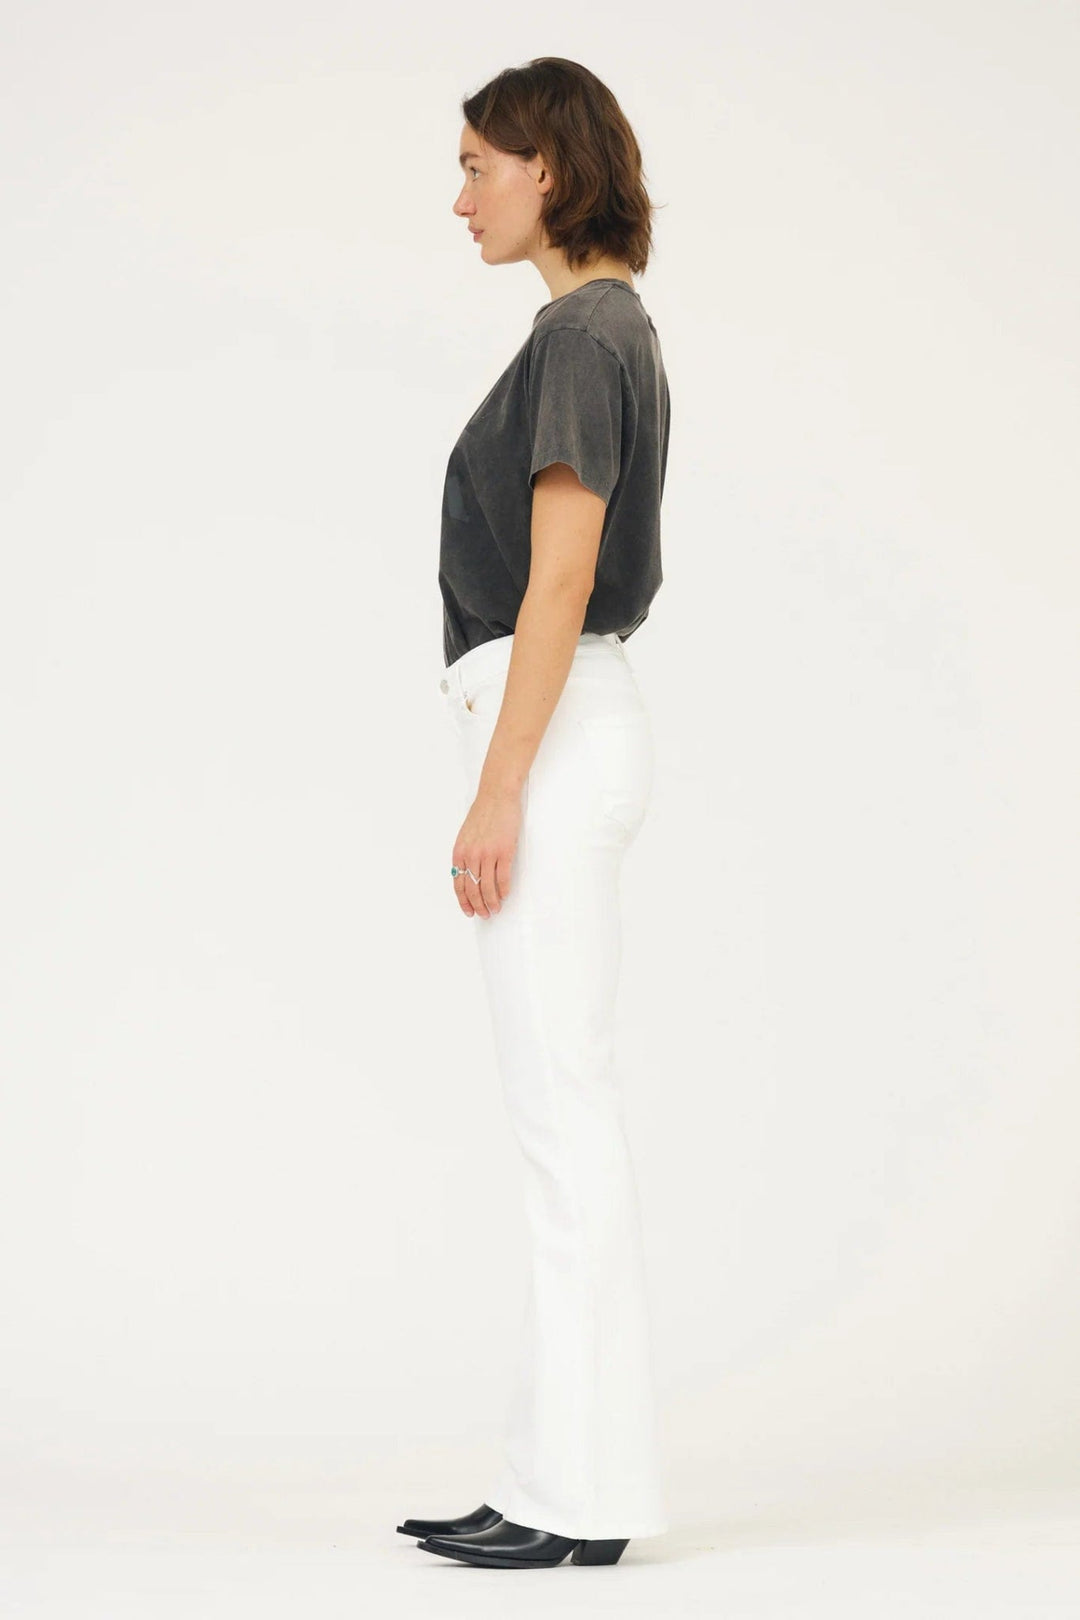 Tara Jeans White | Bukser | Smuk - Dameklær på nett